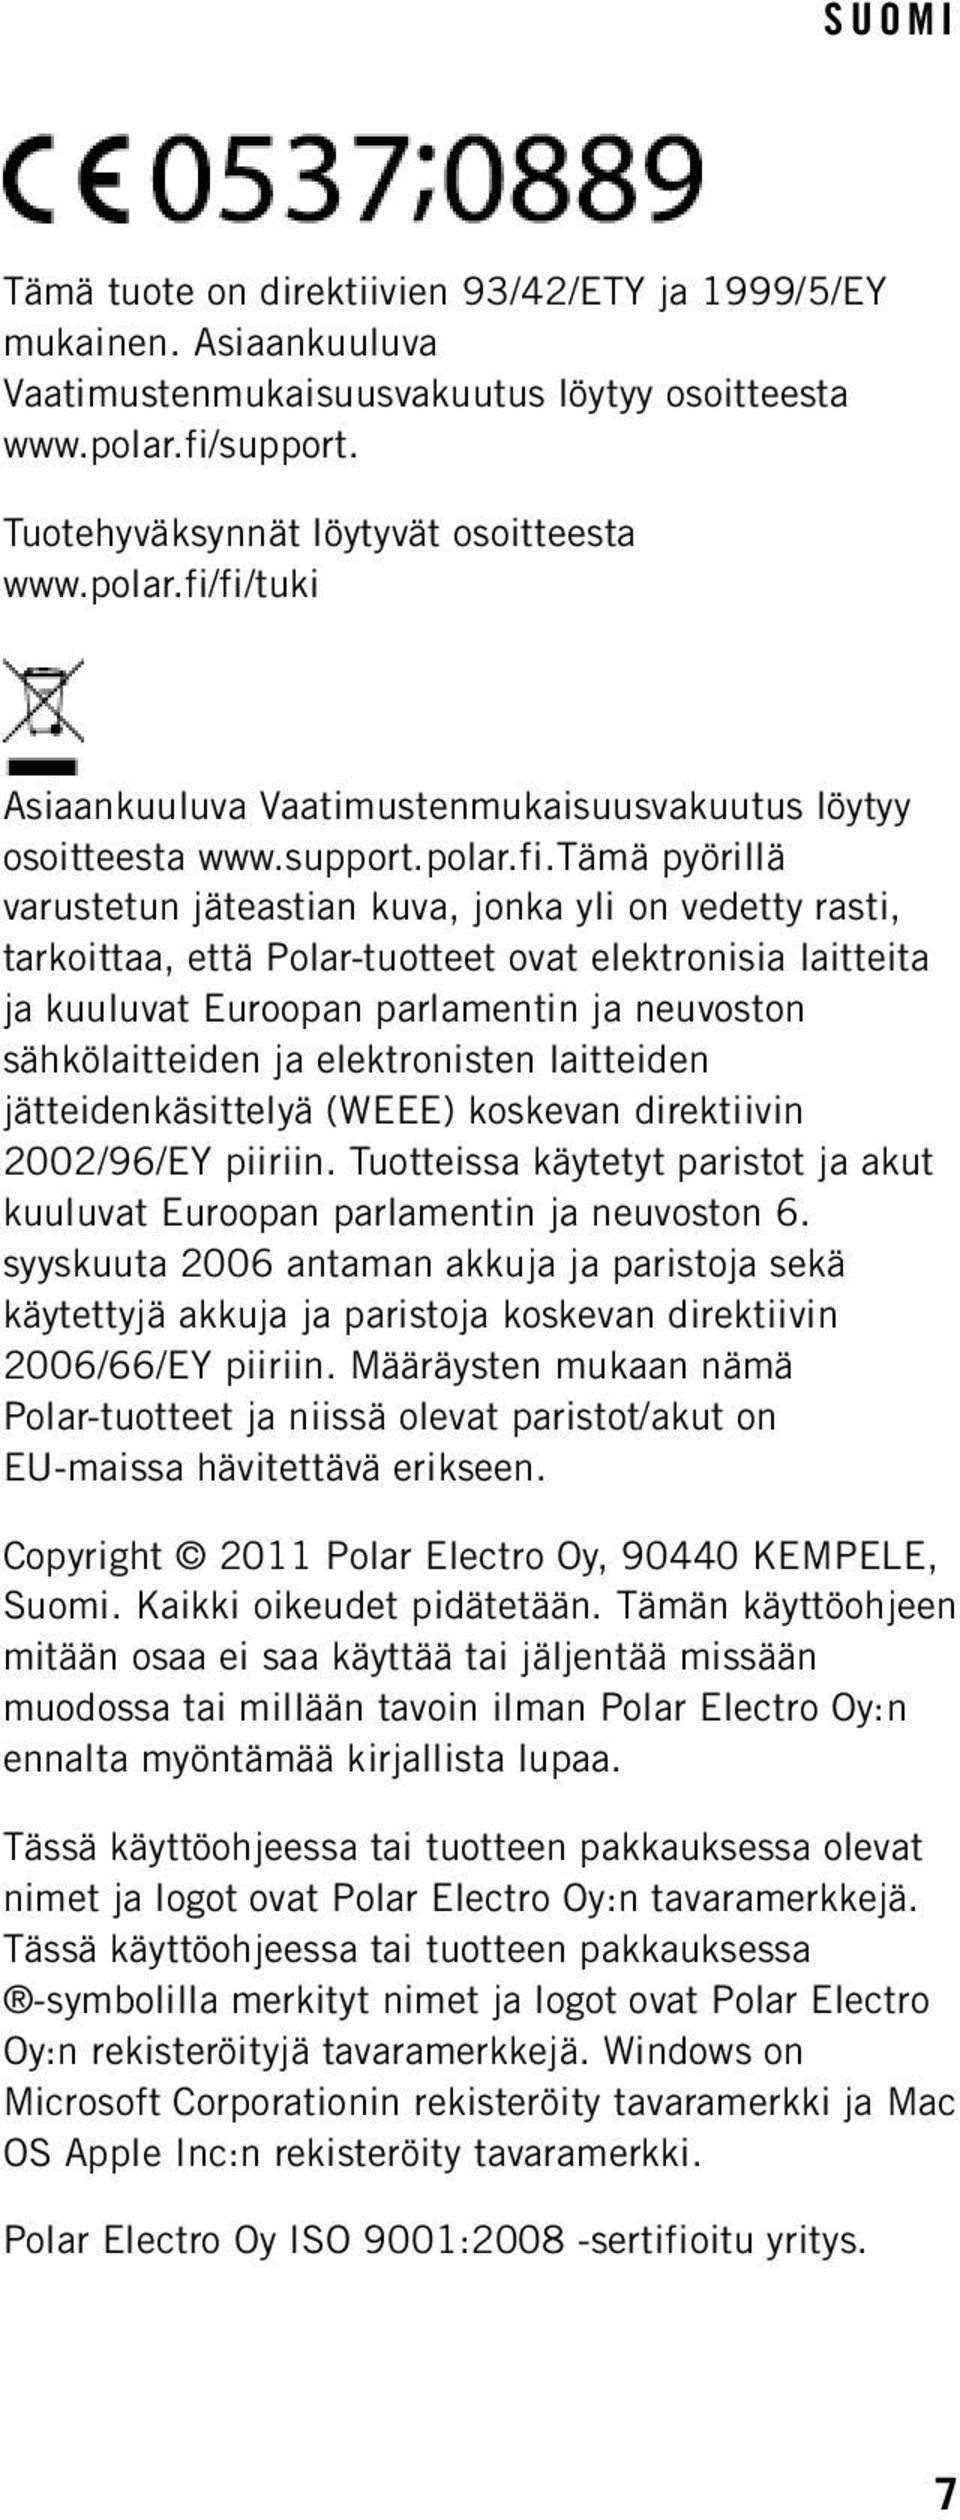 jonka yli on vedetty rasti, tarkoittaa, että Polar-tuotteet ovat elektronisia laitteita ja kuuluvat Euroopan parlamentin ja neuvoston sähkölaitteiden ja elektronisten laitteiden jätteidenkäsittelyä